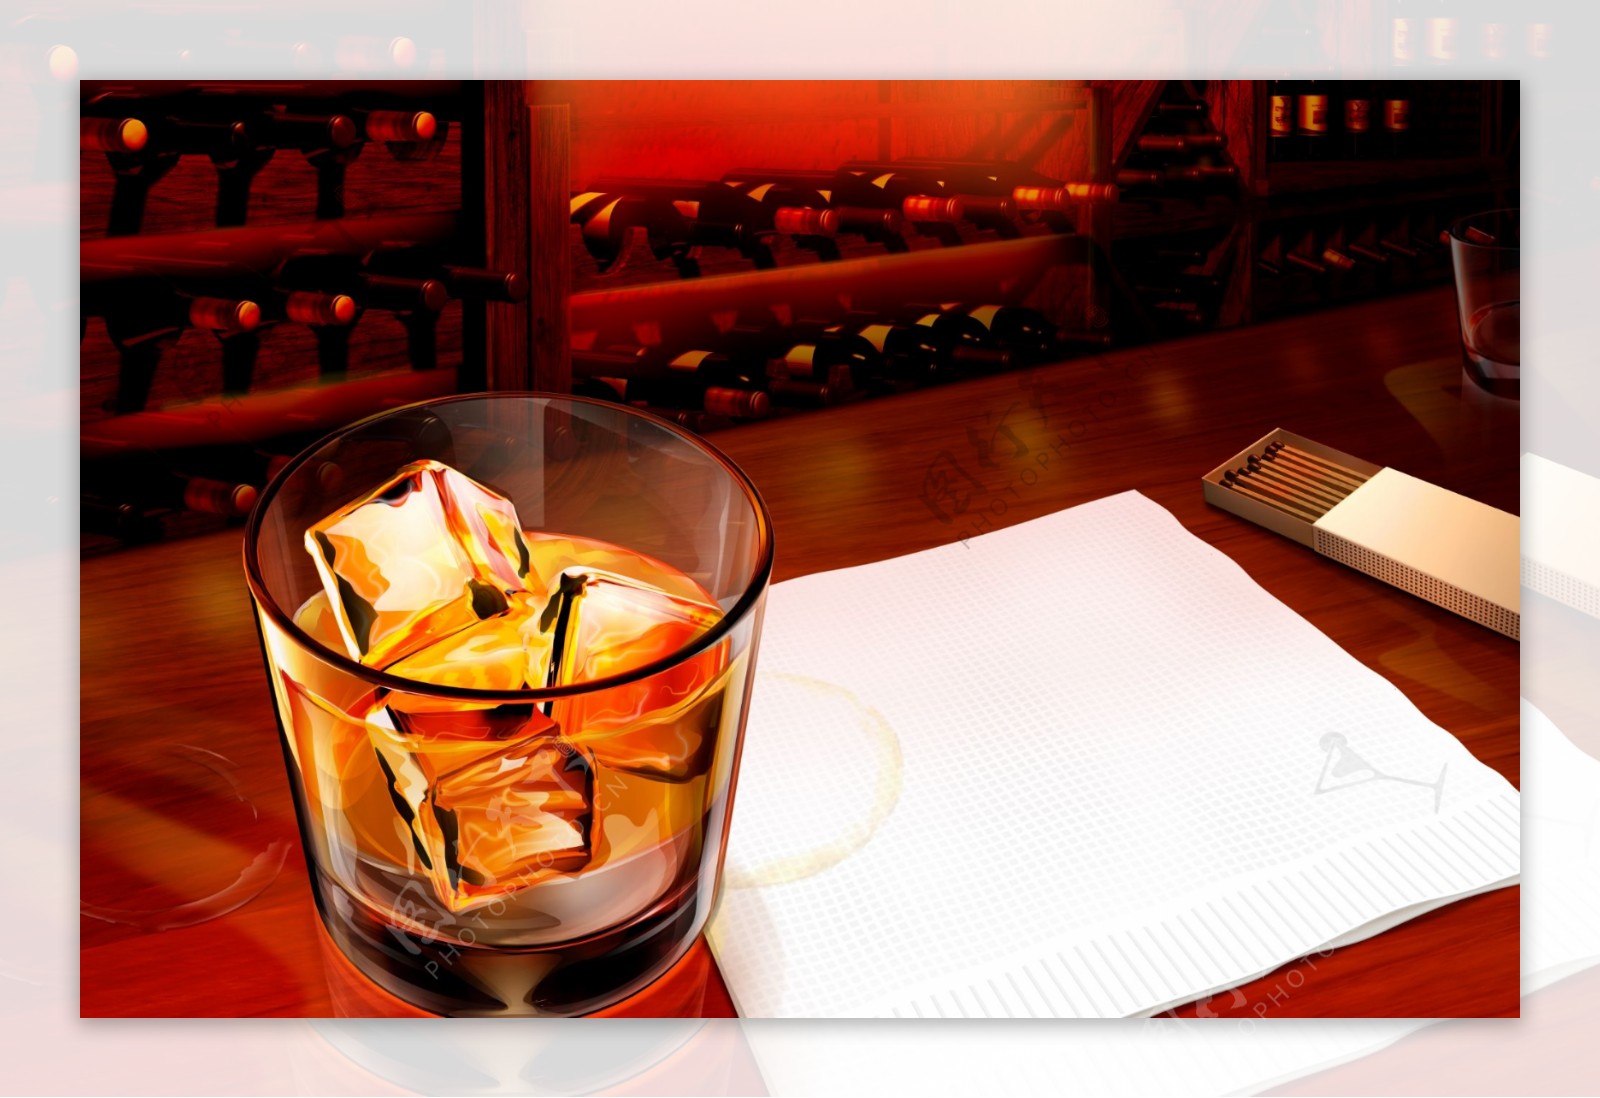 4910酒窖桌上的酒杯元件独立图片